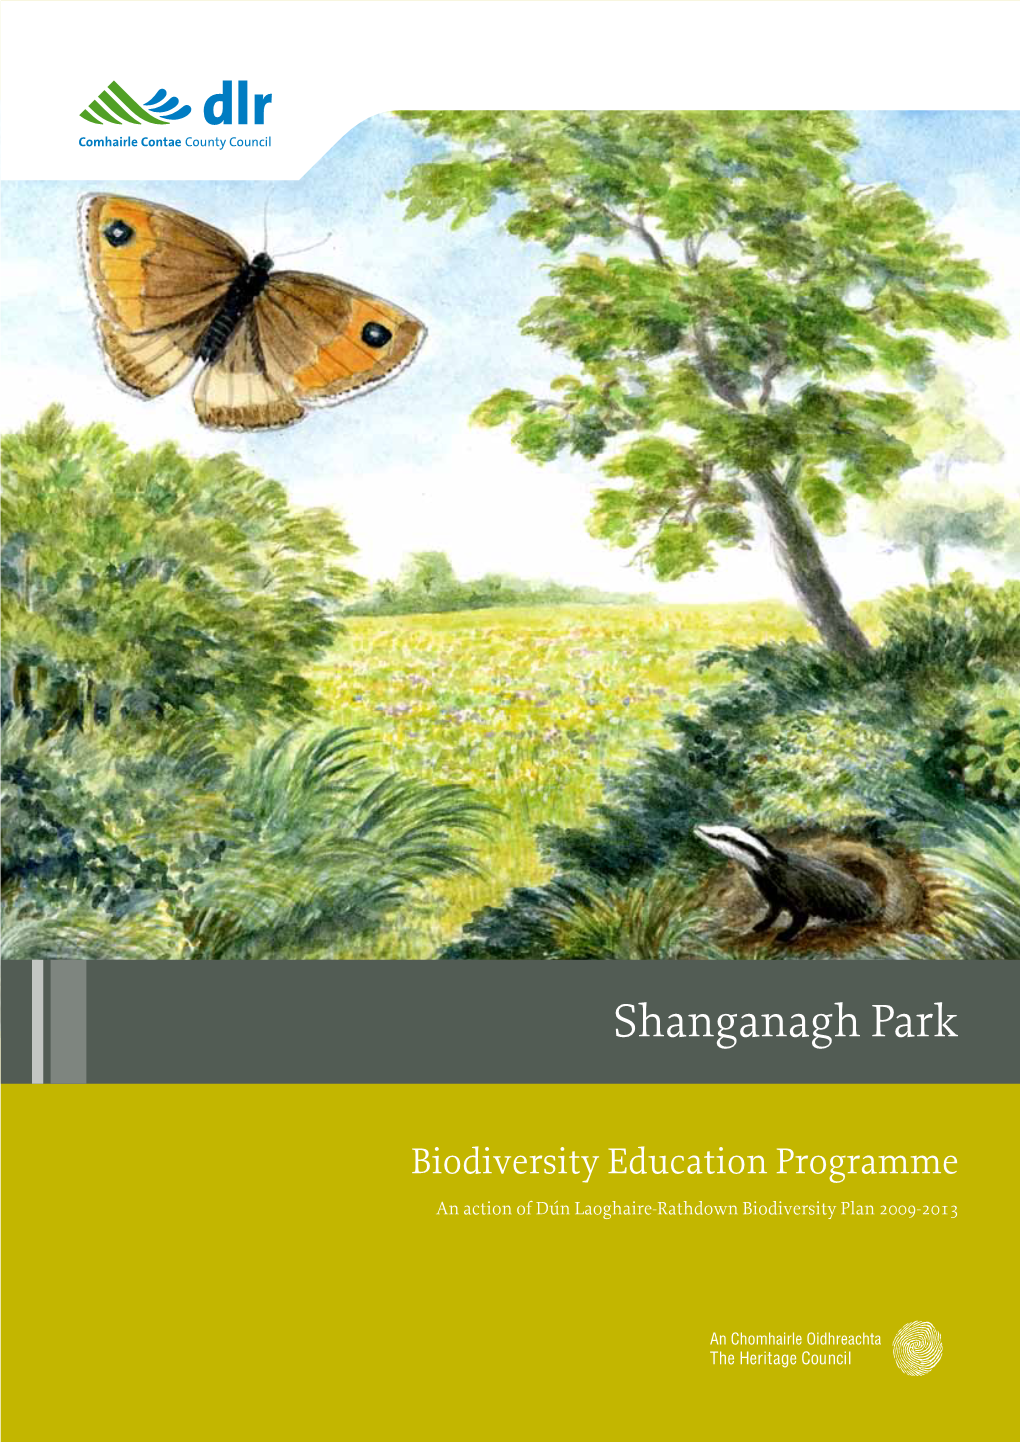 Shanganagh Park